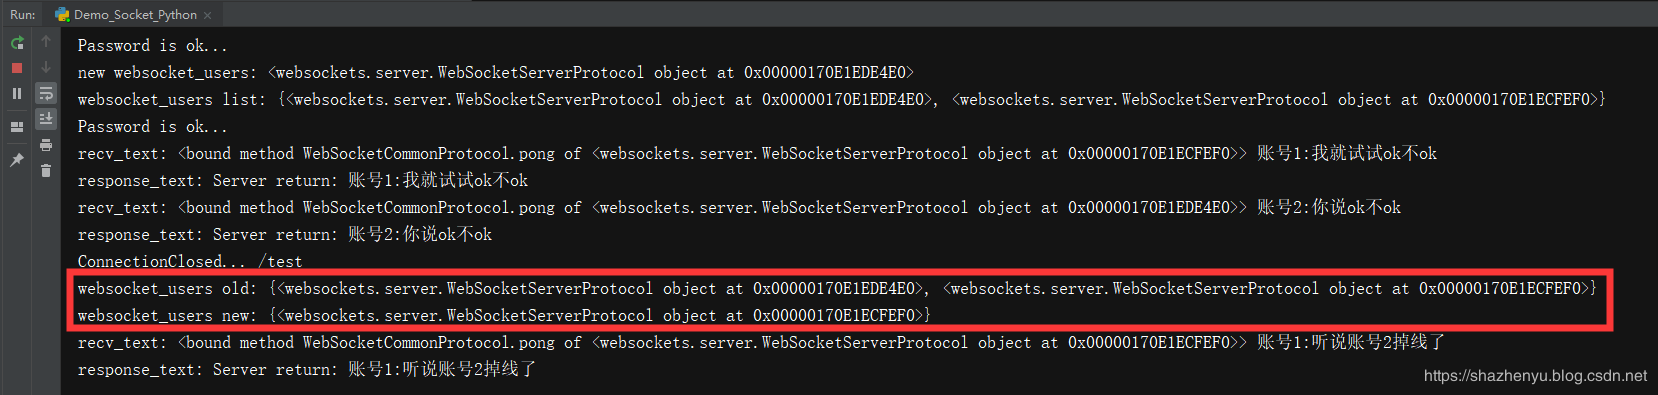 python开发实例之python使用Websocket库开发简单聊天工具实例详解(python+Websocket+JS)